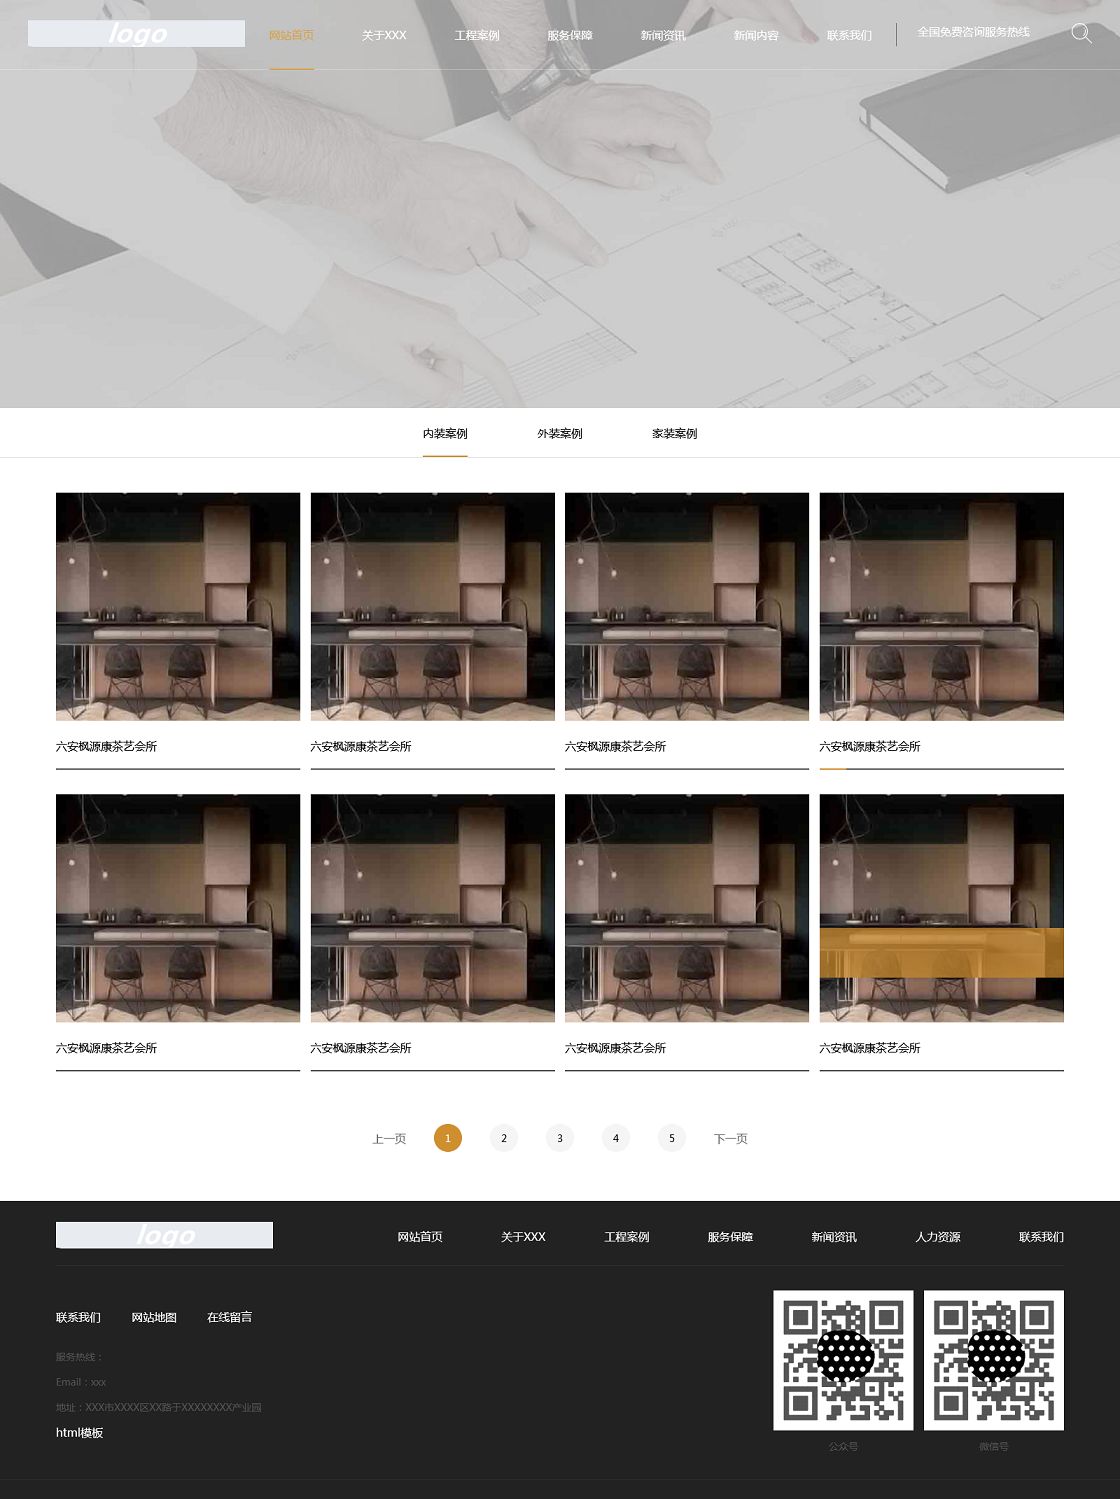 中文灰色jquery沉稳大气的工程建筑类网站模板